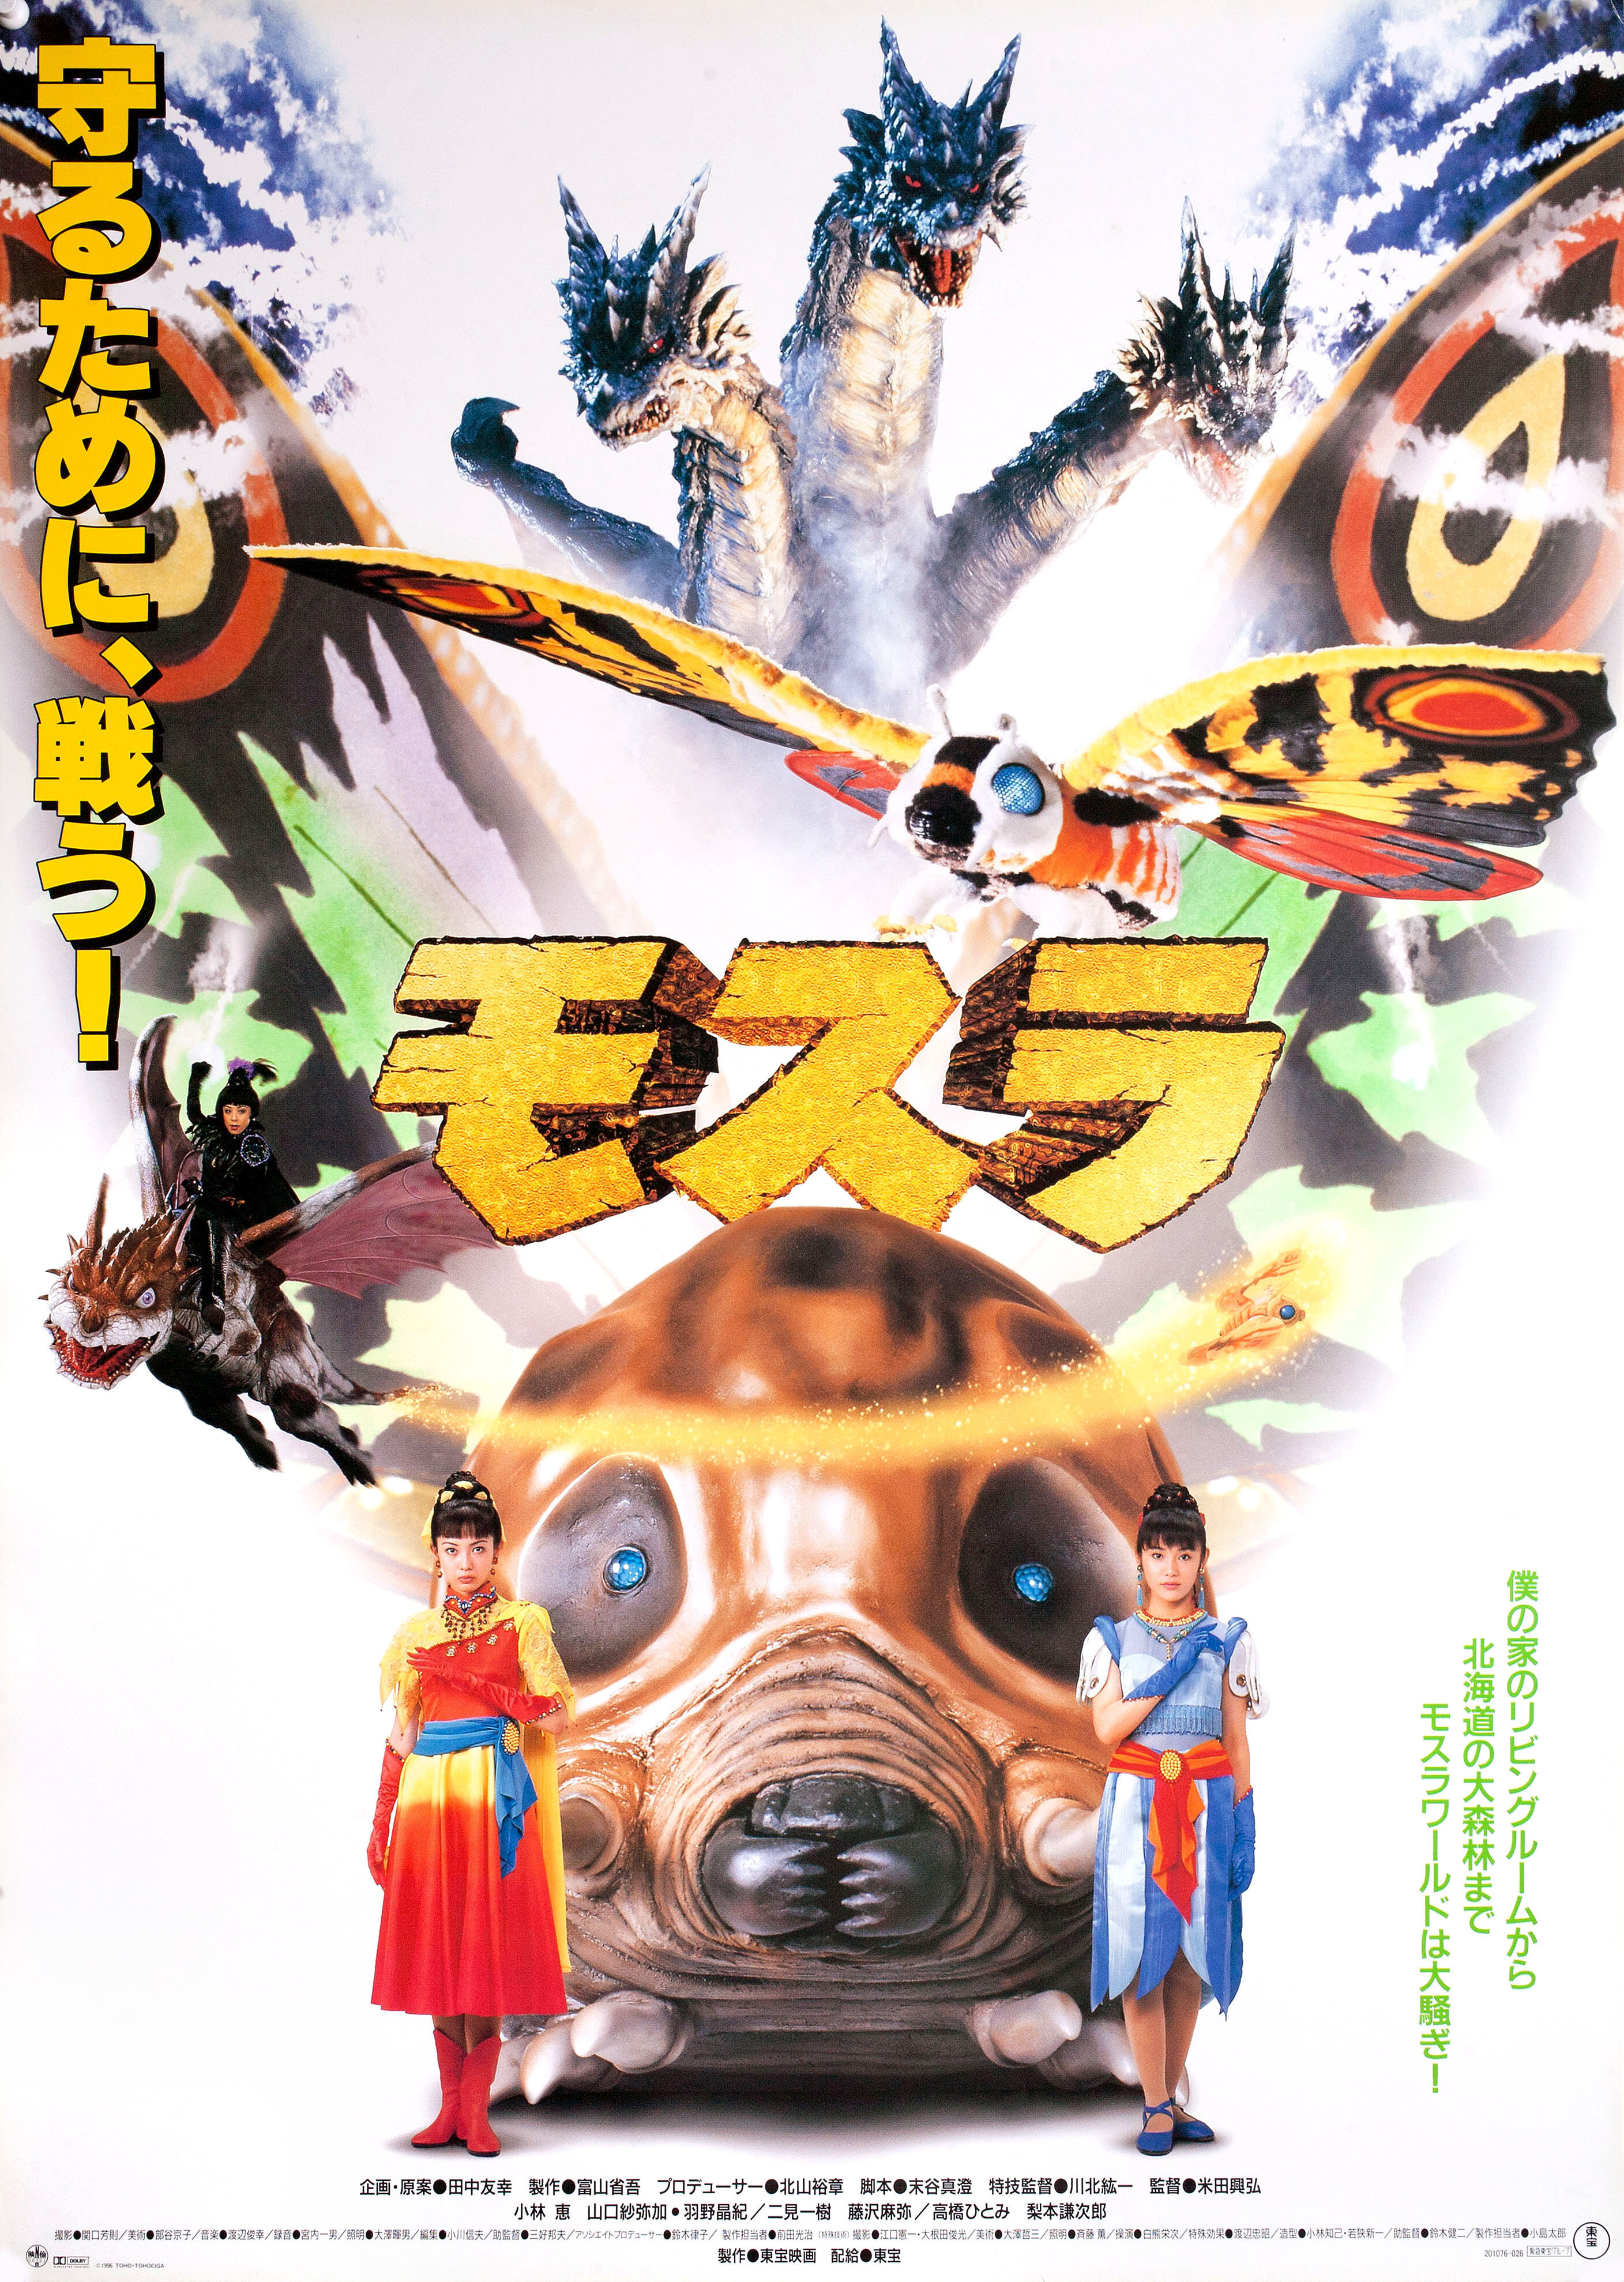 Возрождение Мотры (Rebirth of Mothra, 1996), режиссёр Окихиро Йонеда, японский постер к фильму (монстры, 1996 год)